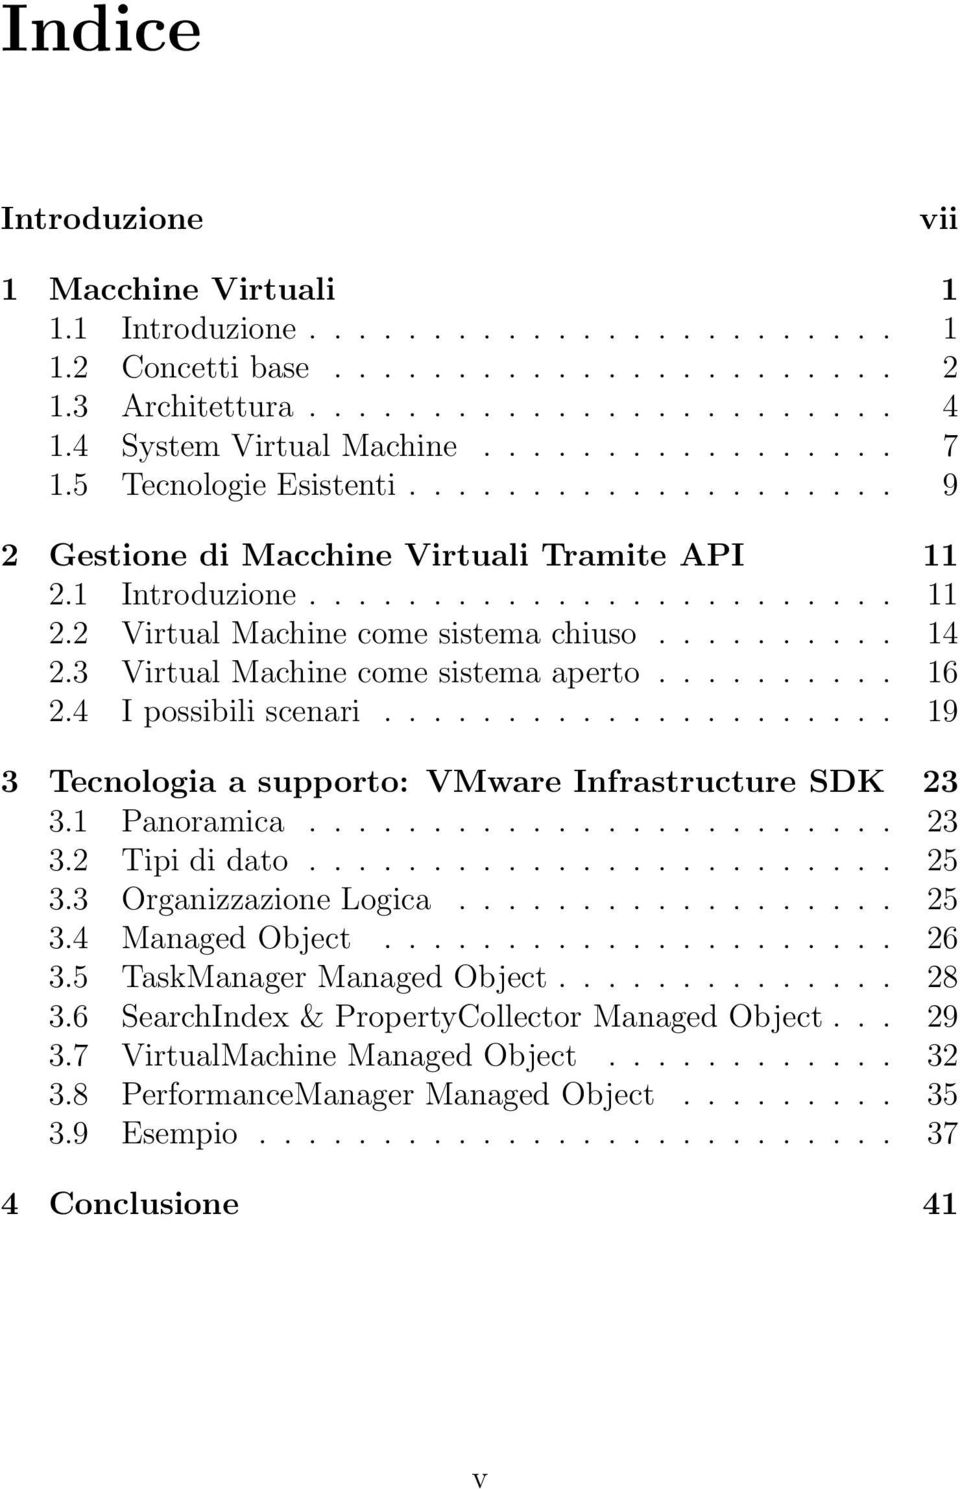 ......... 14 2.3 Virtual Machine come sistema aperto.......... 16 2.4 I possibili scenari..................... 19 3 Tecnologia a supporto: VMware Infrastructure SDK 23 3.1 Panoramica........................ 23 3.2 Tipi di dato.